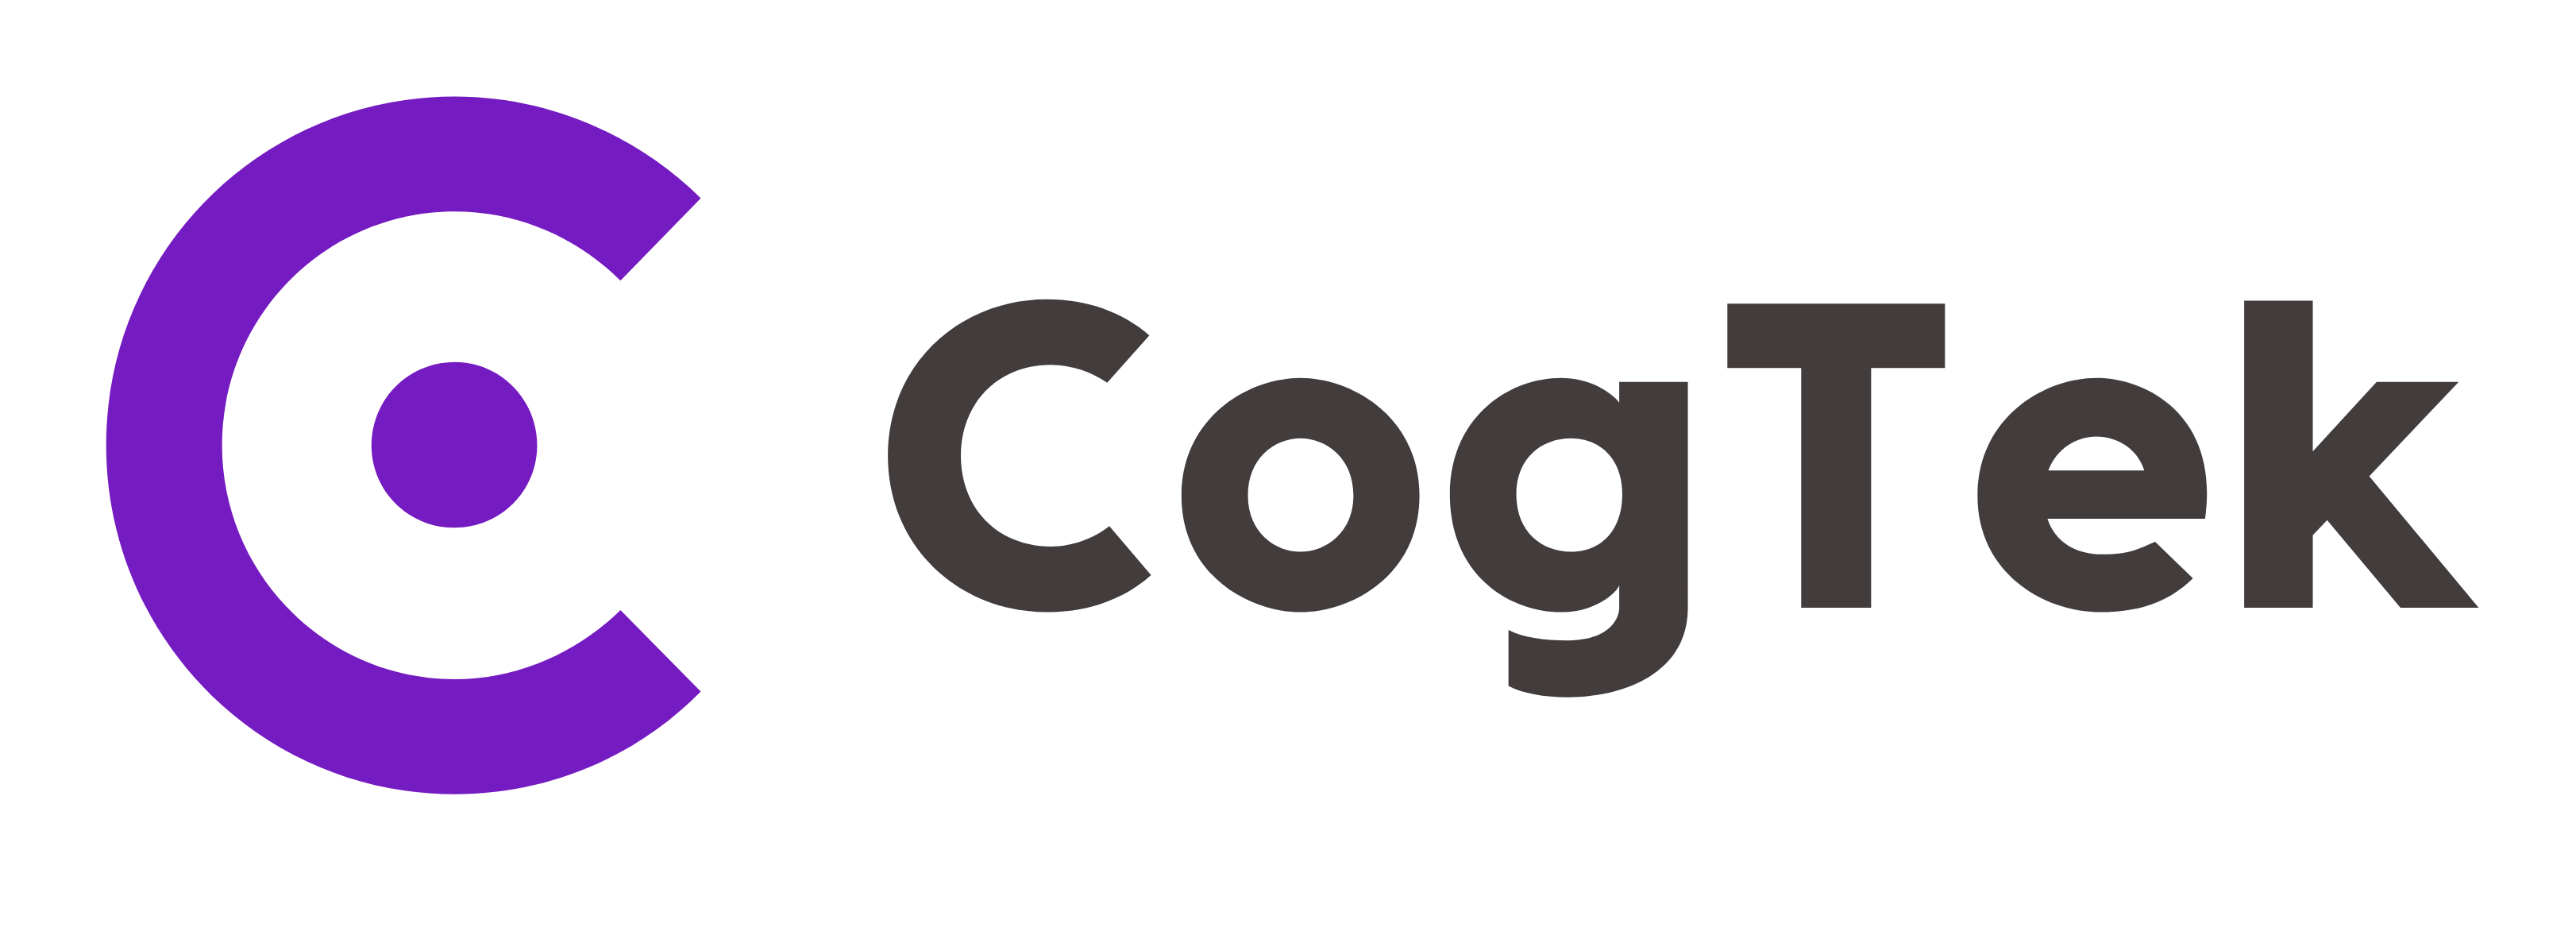 CogTek